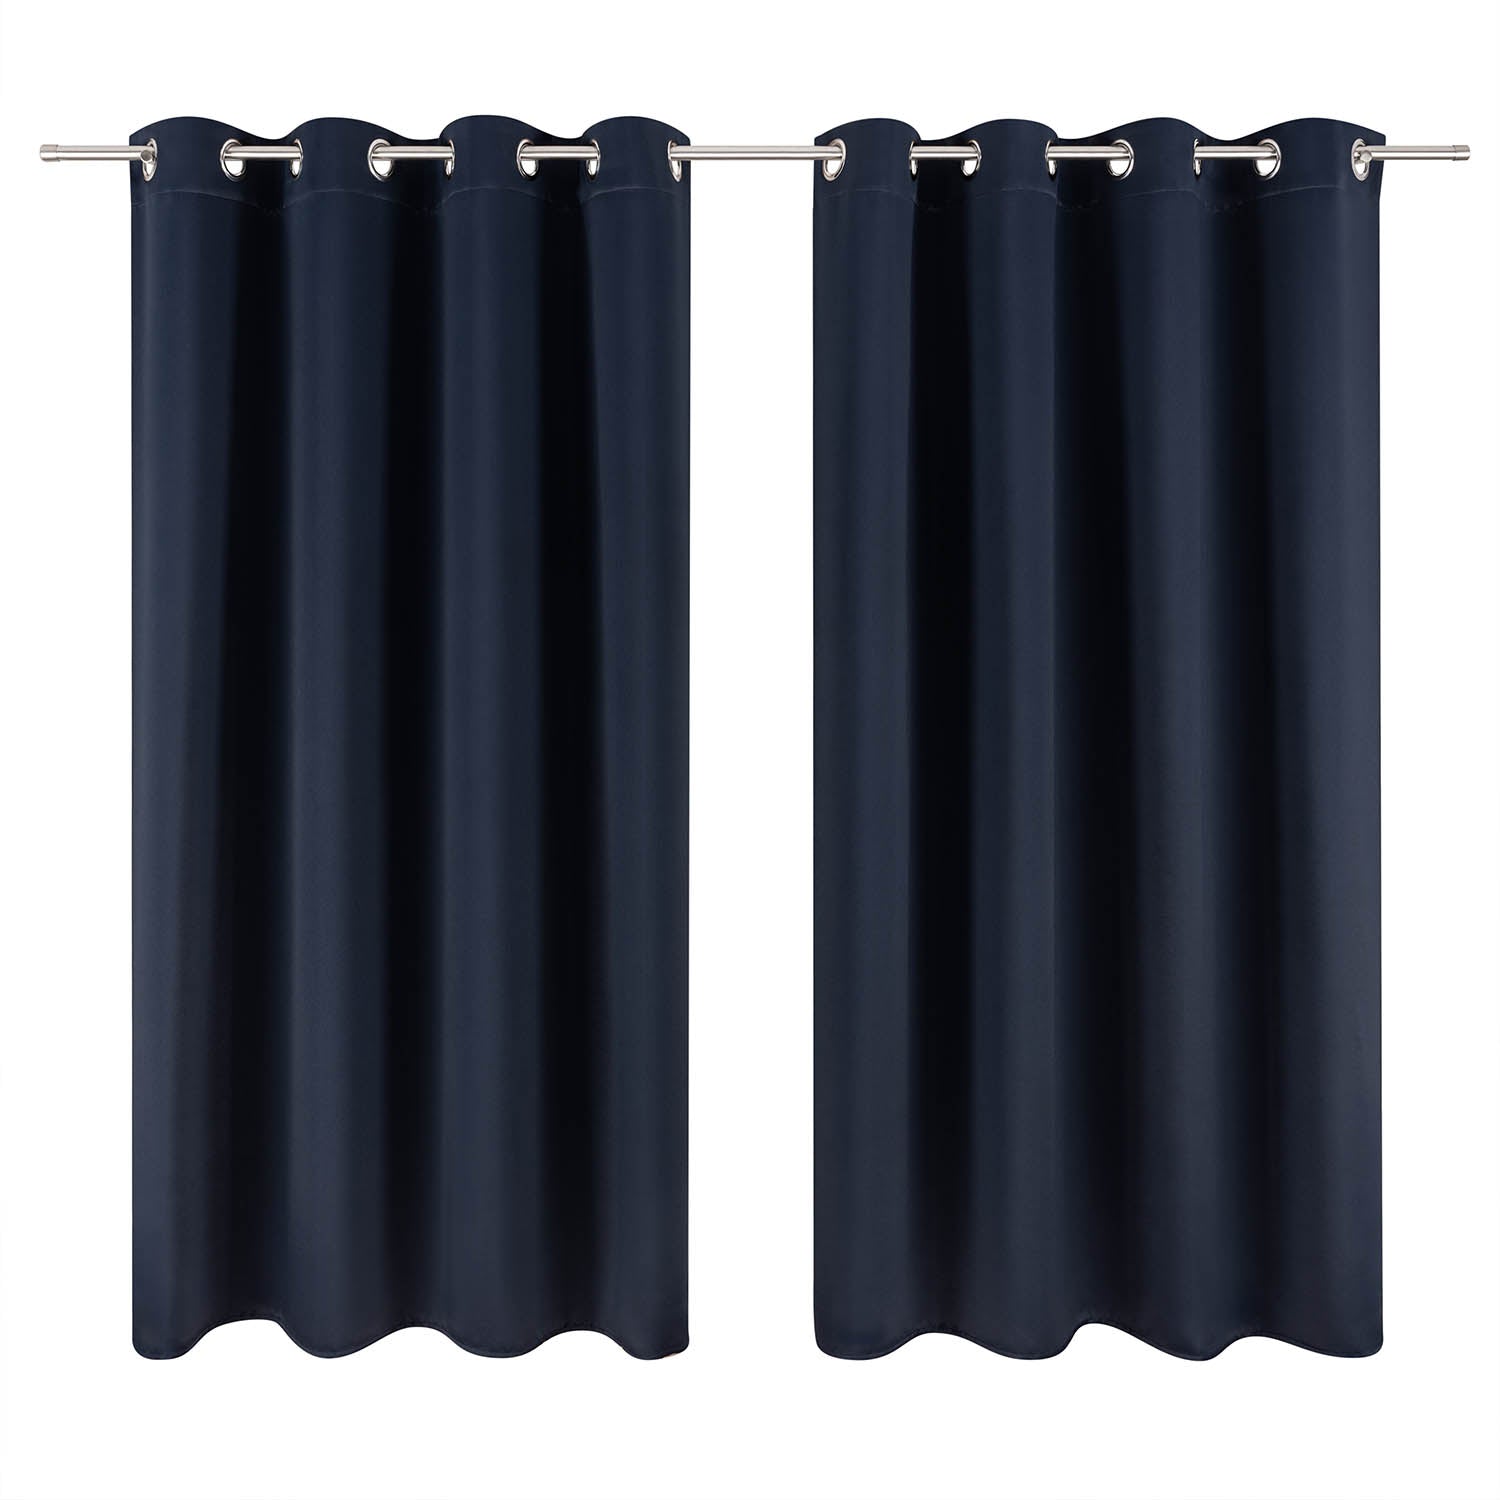 Zwei elegante Vorhänge an einer Vorhangstange vollständig geschlossen um einen Raum abzudunkeln oder zu gestalten.